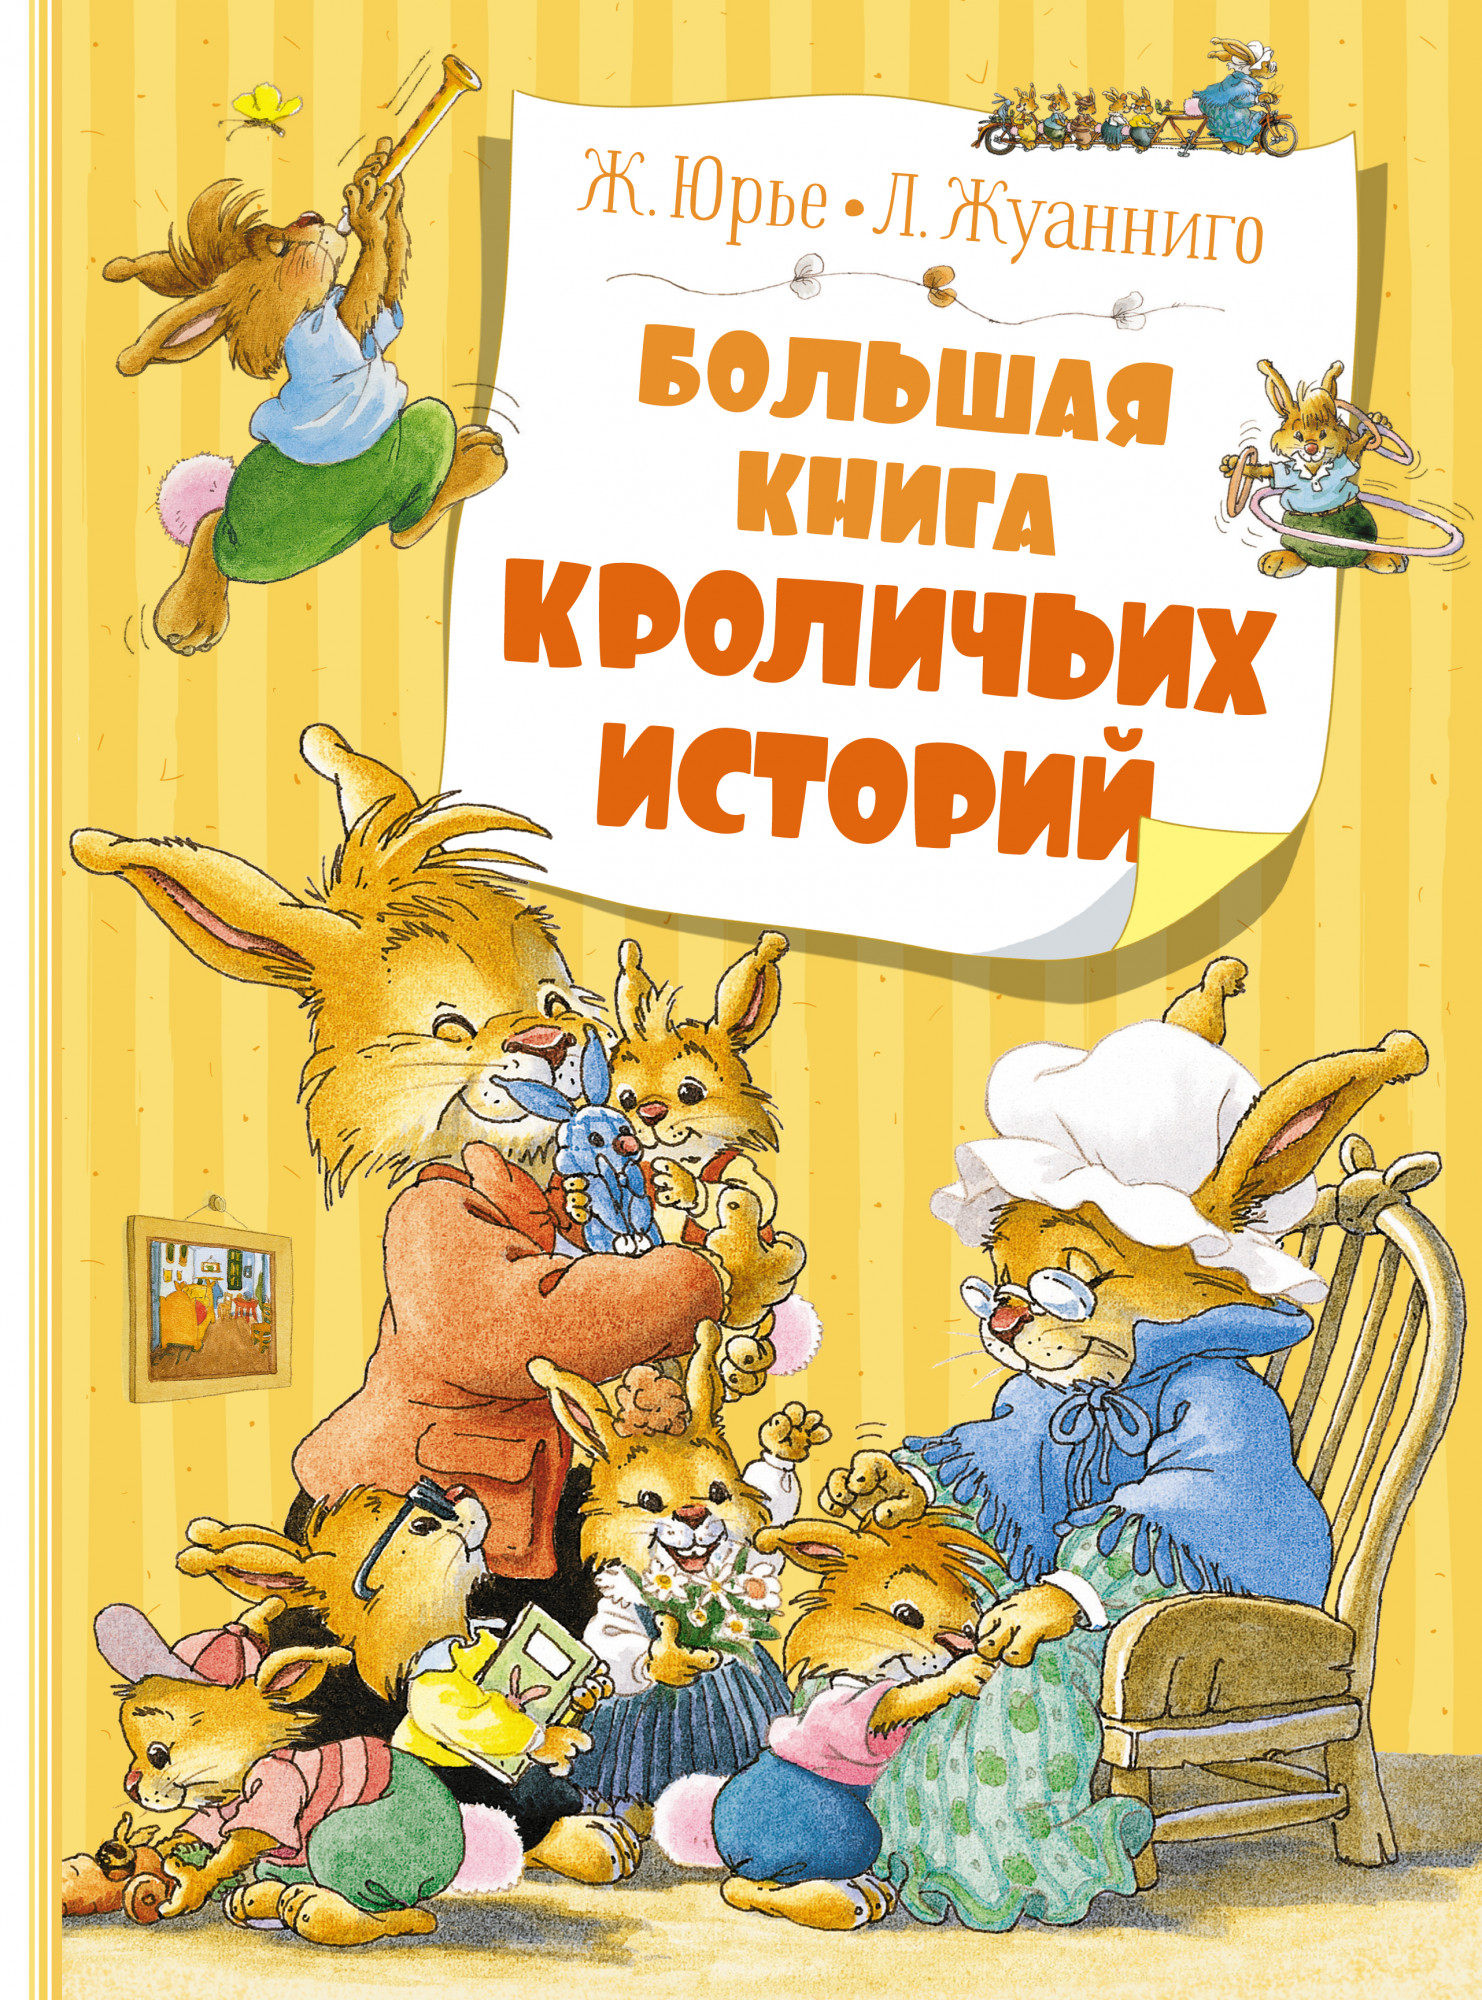 Юрье Женевьева Большая книга кроличьих историй (новое оформление) женевьева юрье новогодняя книга кроличьих историй